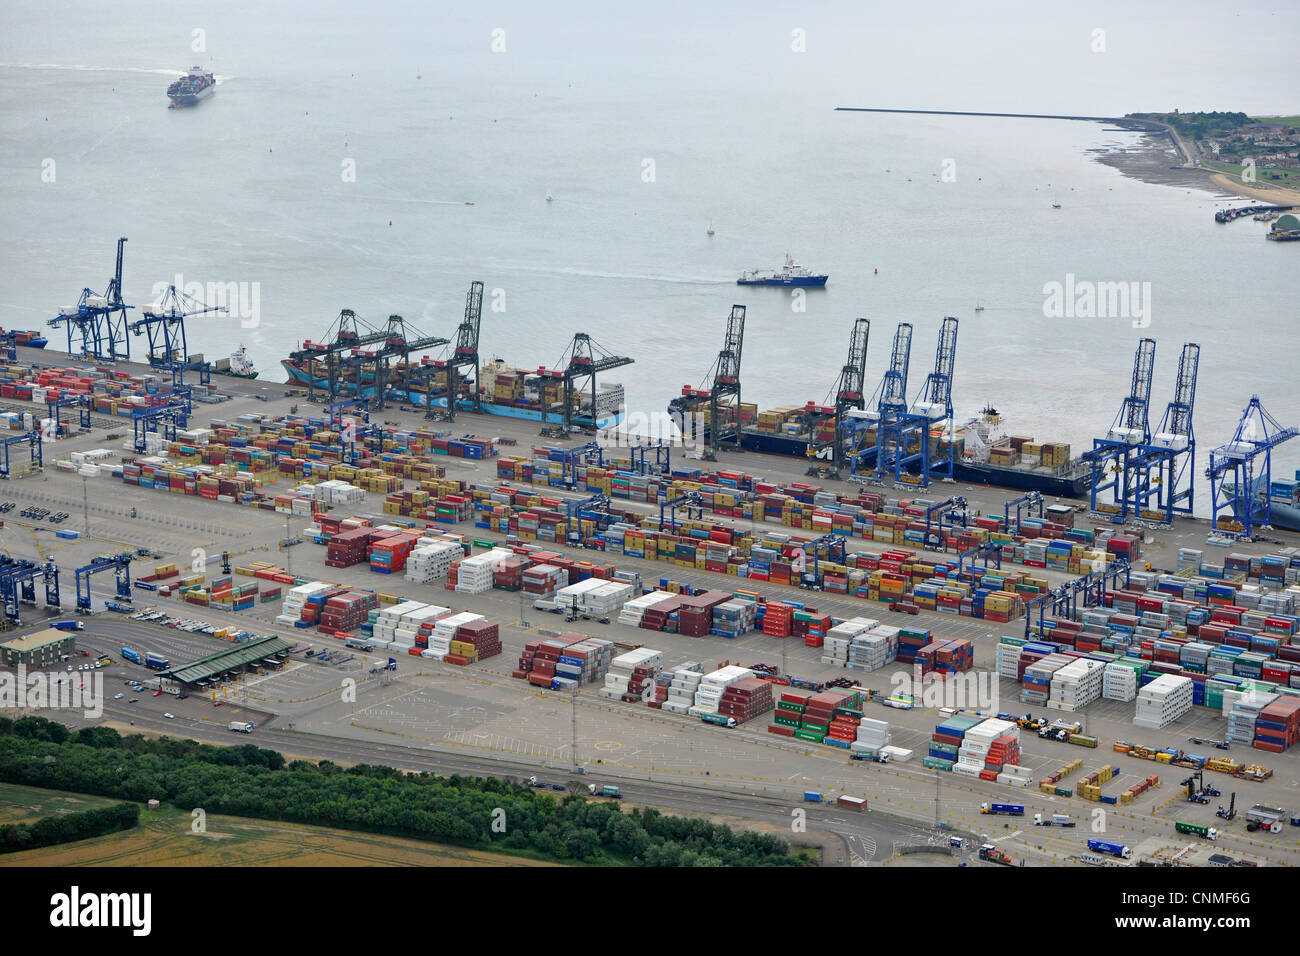 Fotografia aerea mostra Felixstowe docks con contenitori di spedizione, gru e navi in porto. Foto Stock